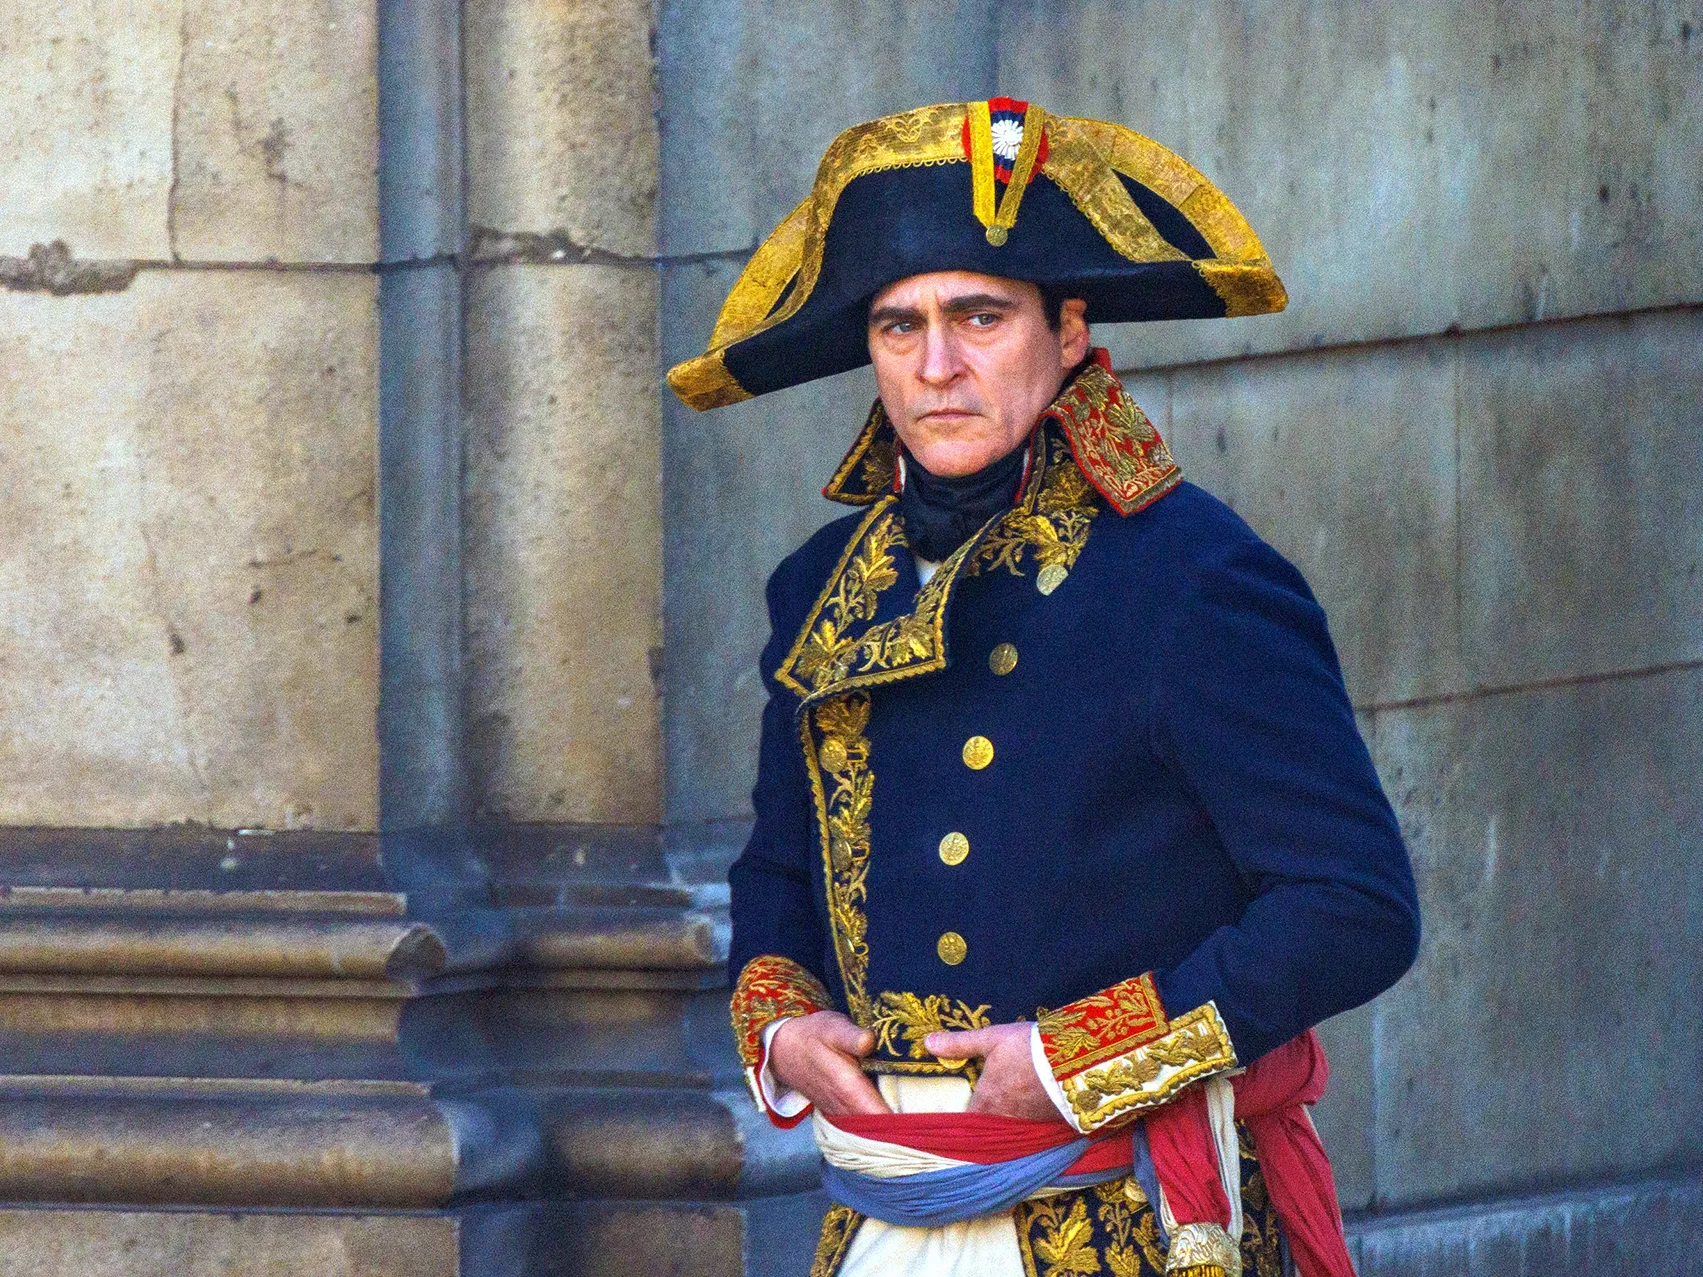 《拿破仑》发布新剧照 华金·菲尼克斯演绎传奇